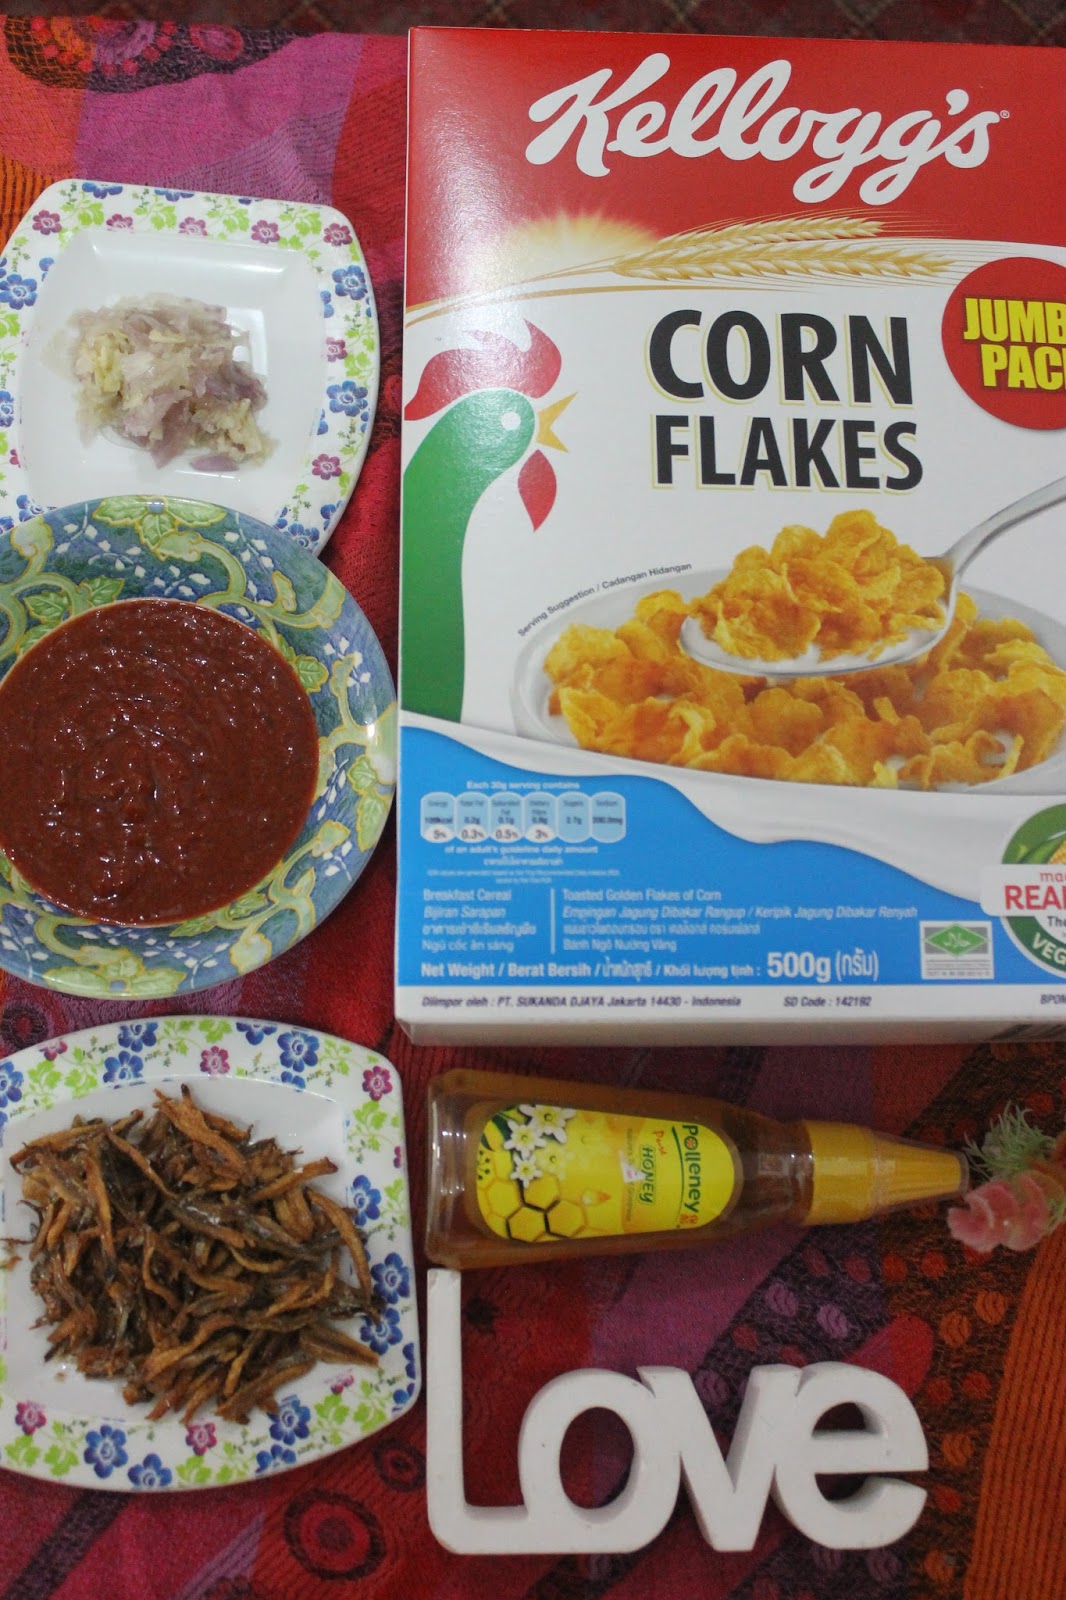 Resepi Biskut dan Kerepek Kellogg's Corn Flakes® versi 